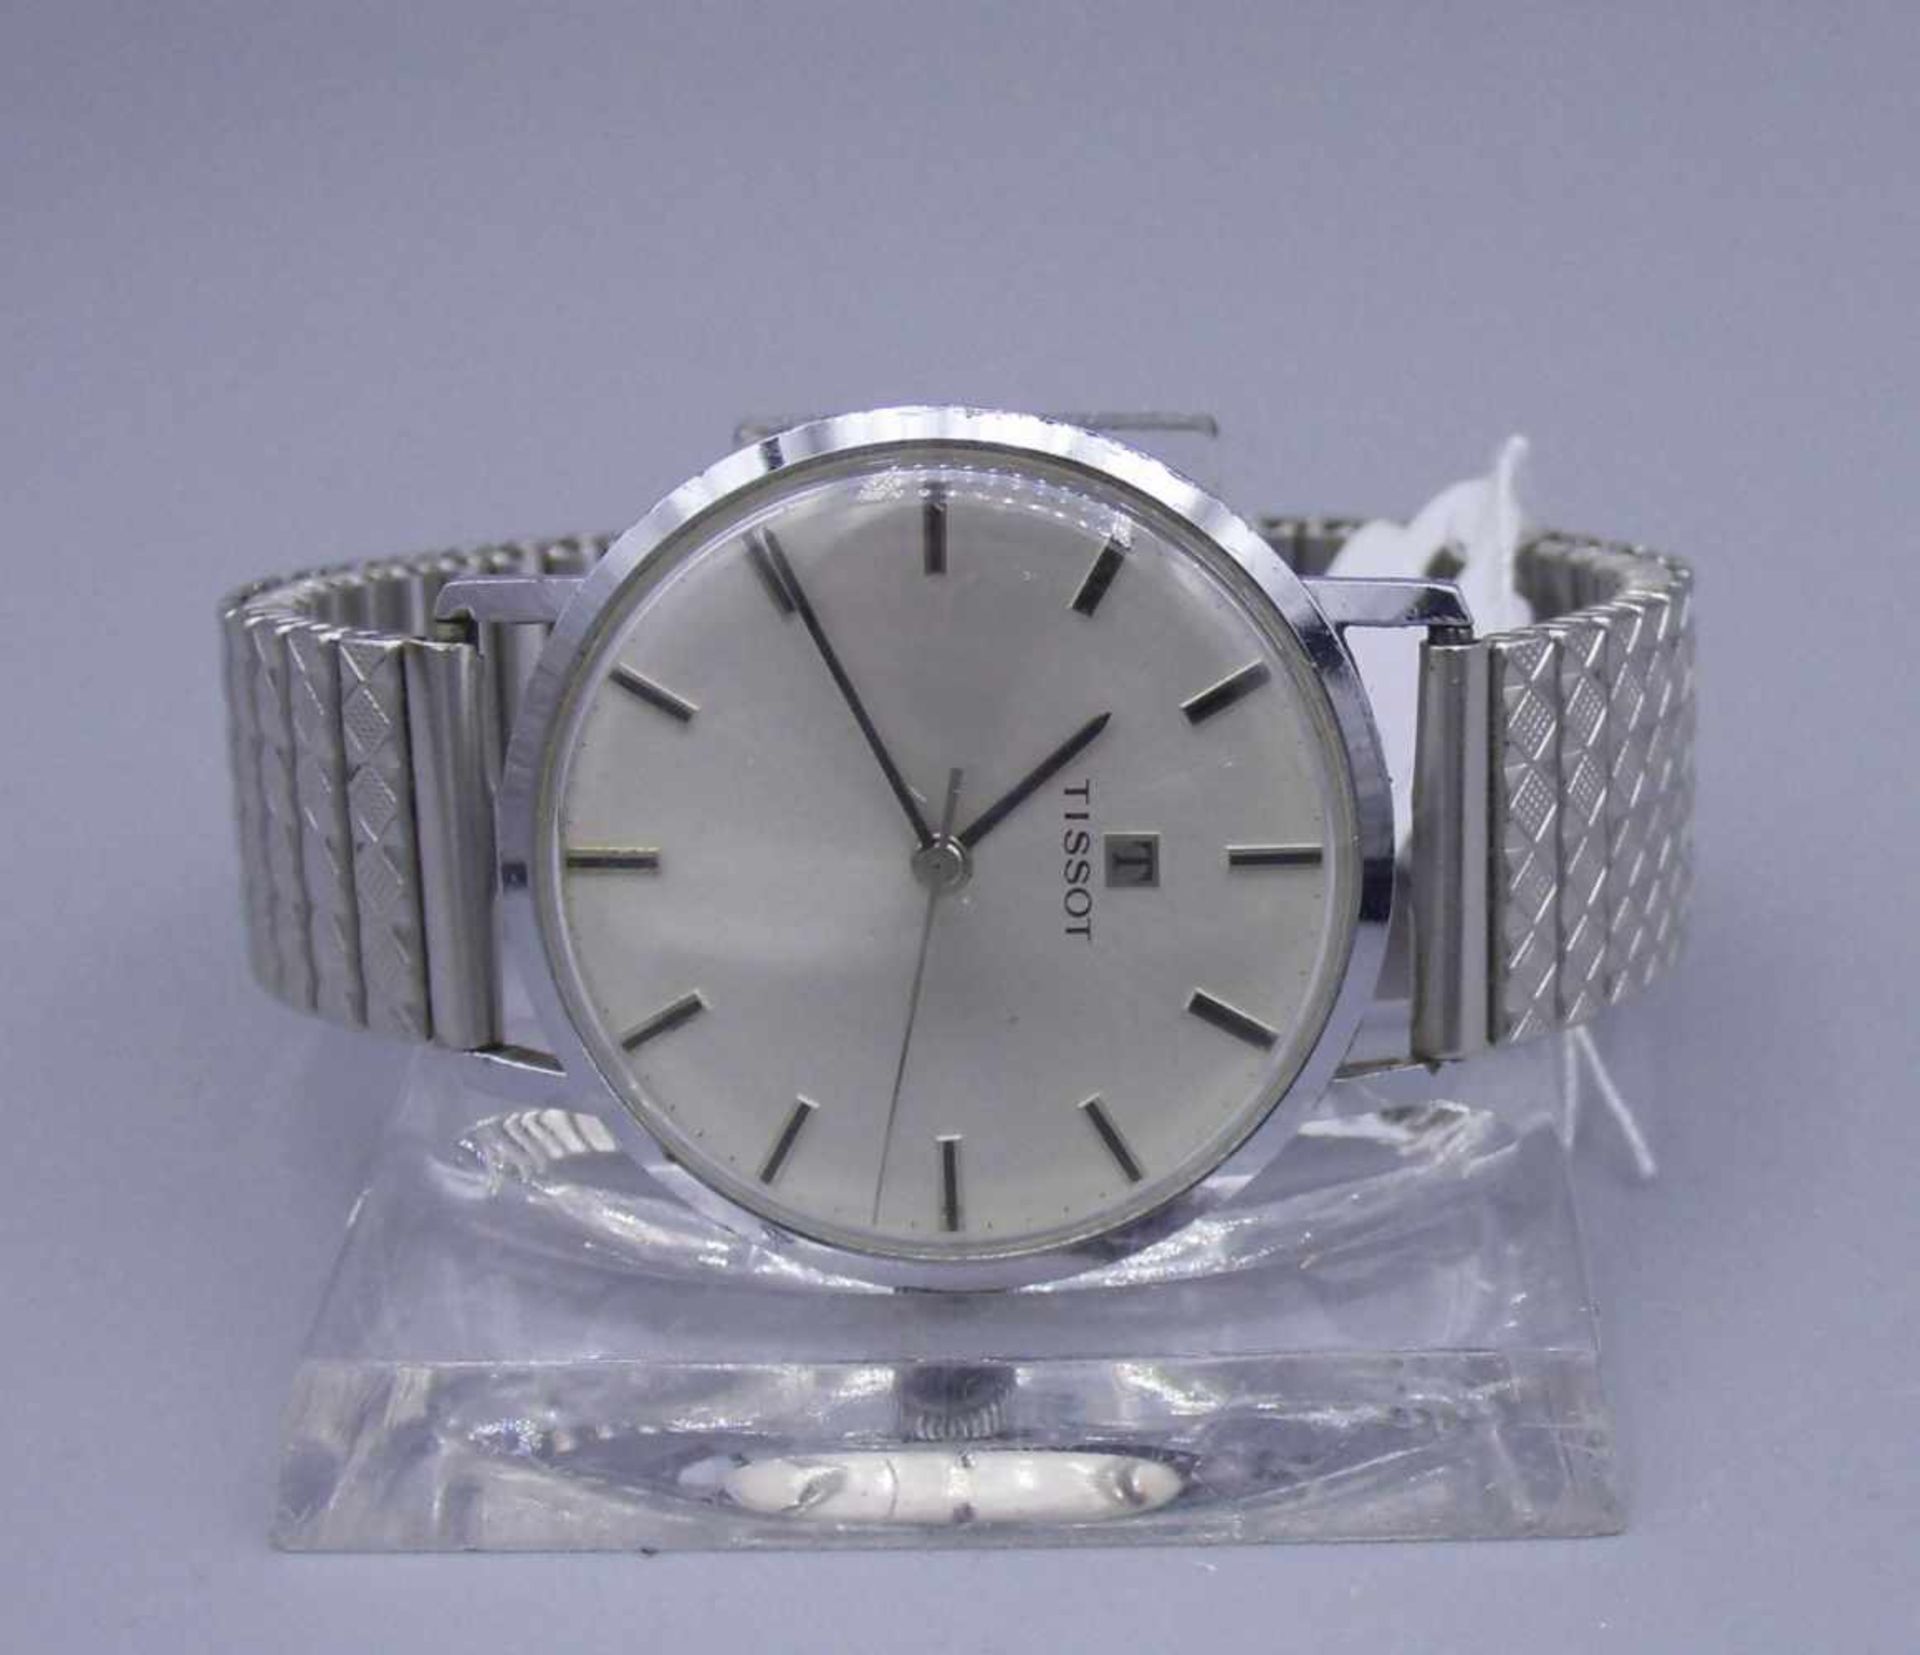 VINTAGE ARMBANDUHR / HERRENUHR- TISSOT / wristwatch, Handaufzug, Manufaktur Tissot / Schweiz. Rundes